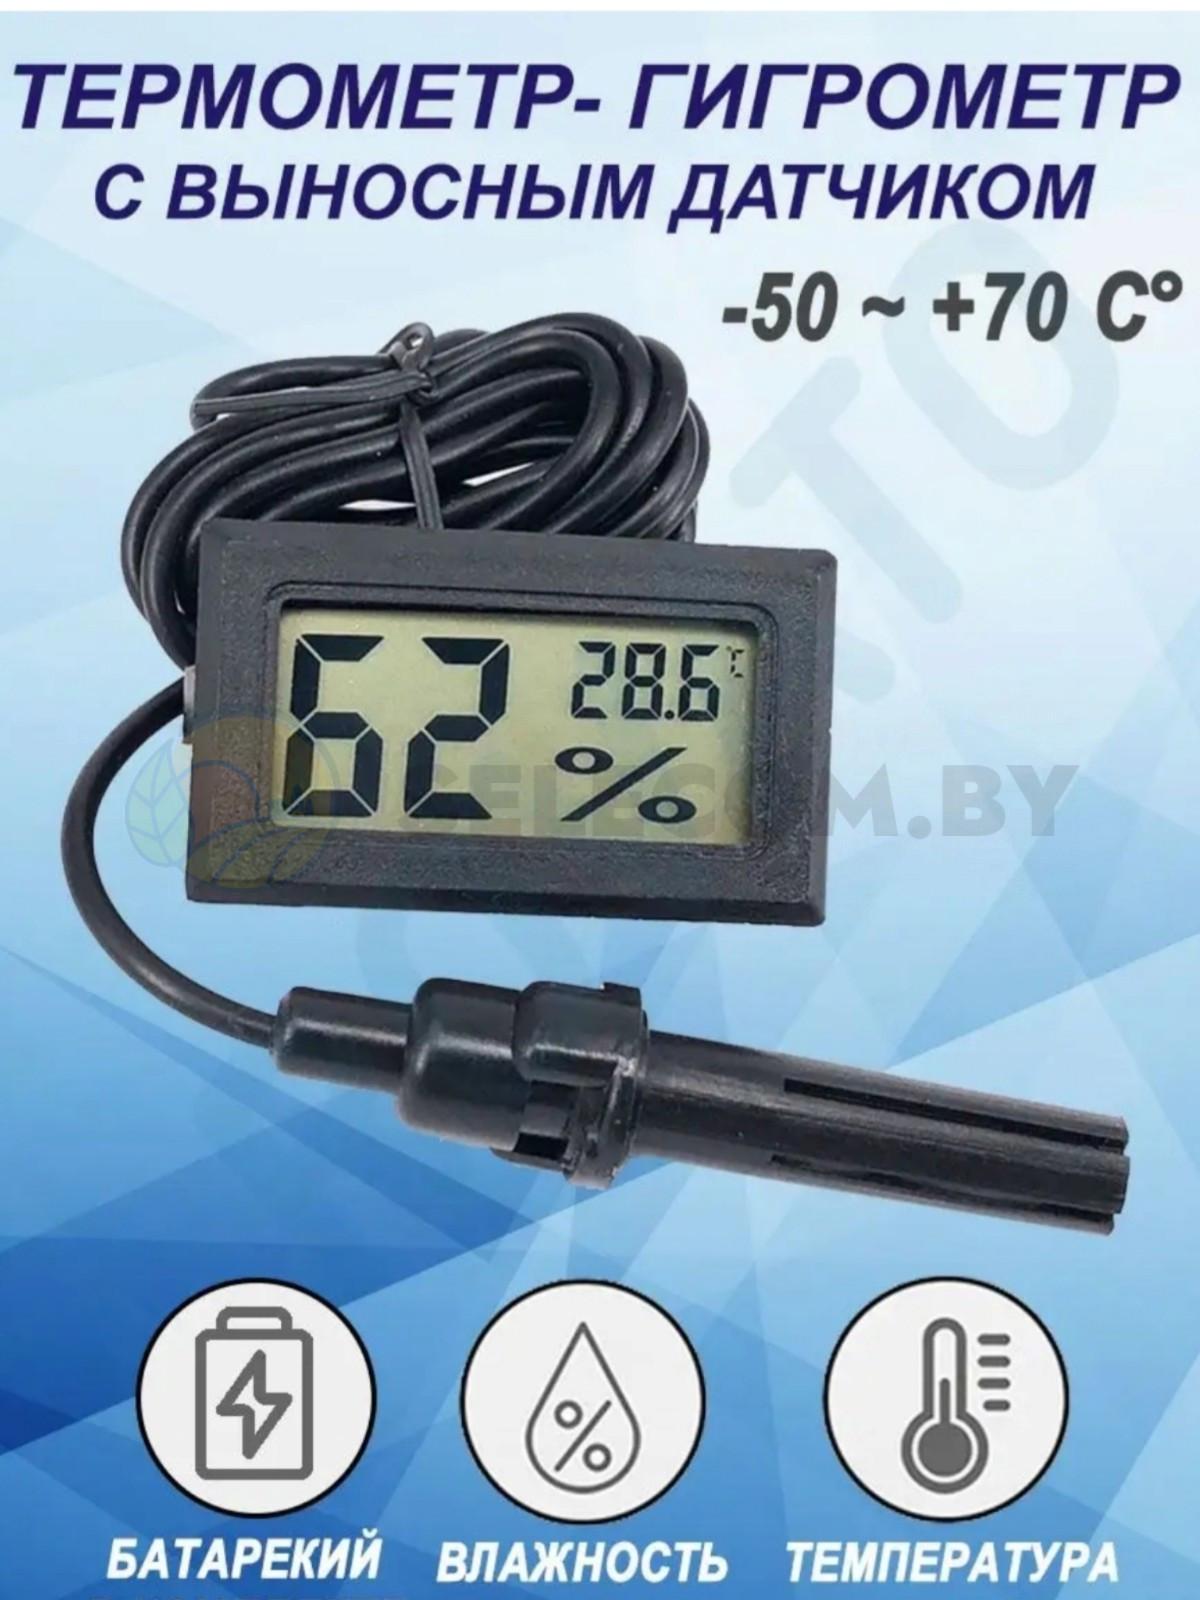 Термометр-гигрометр с выносным датчиком 2